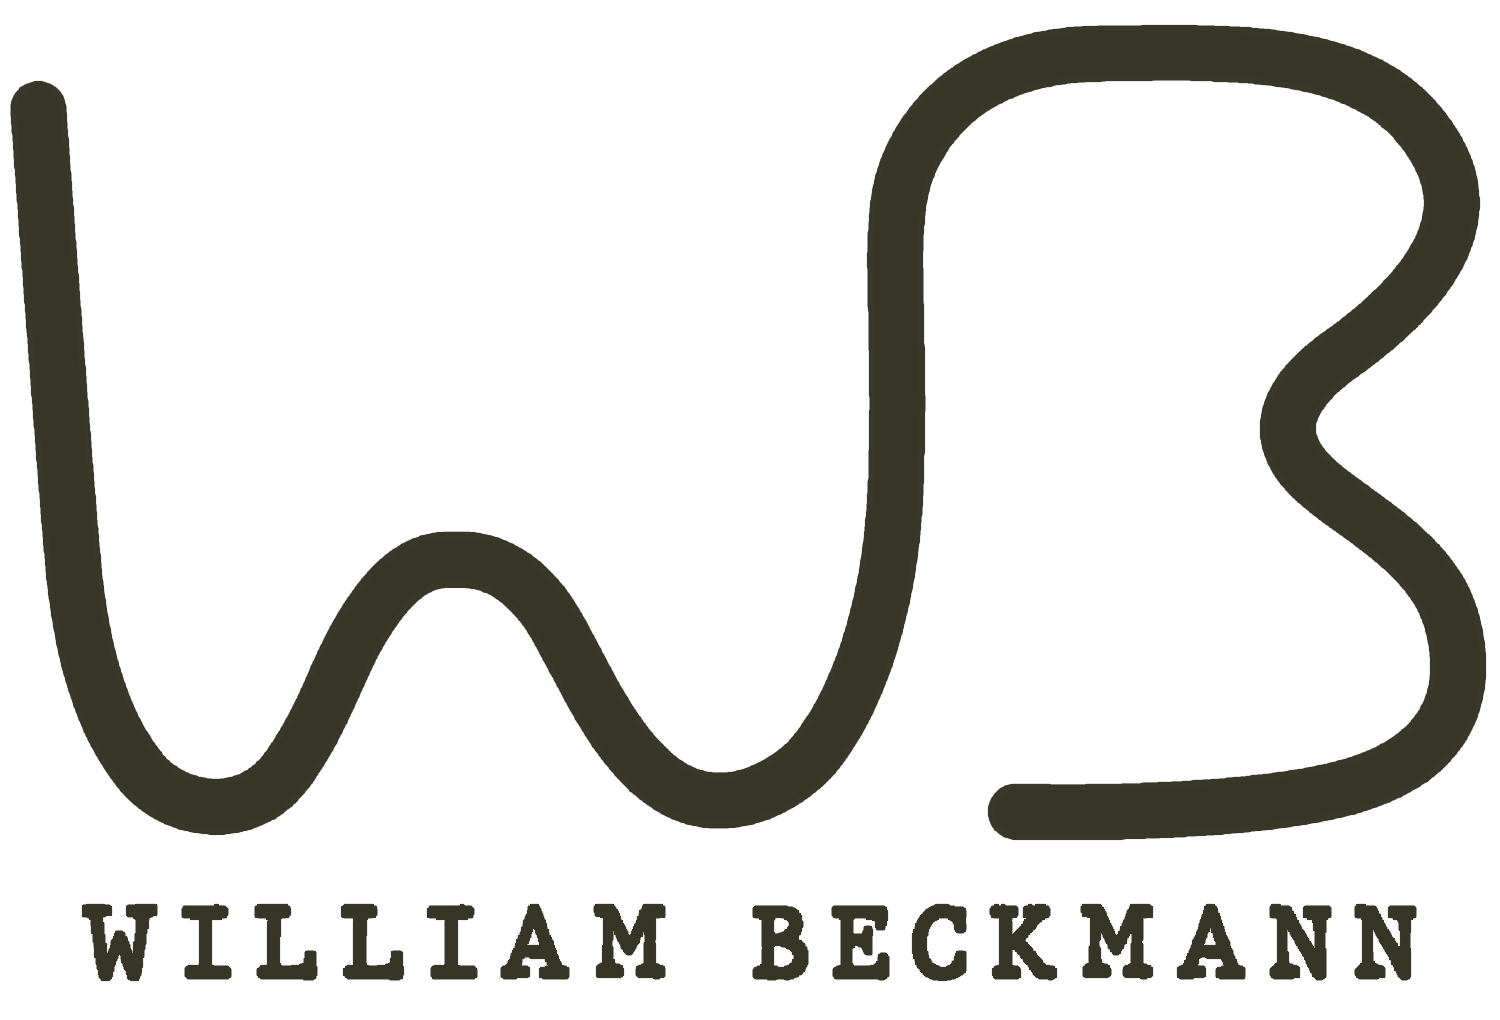 William Beckmann